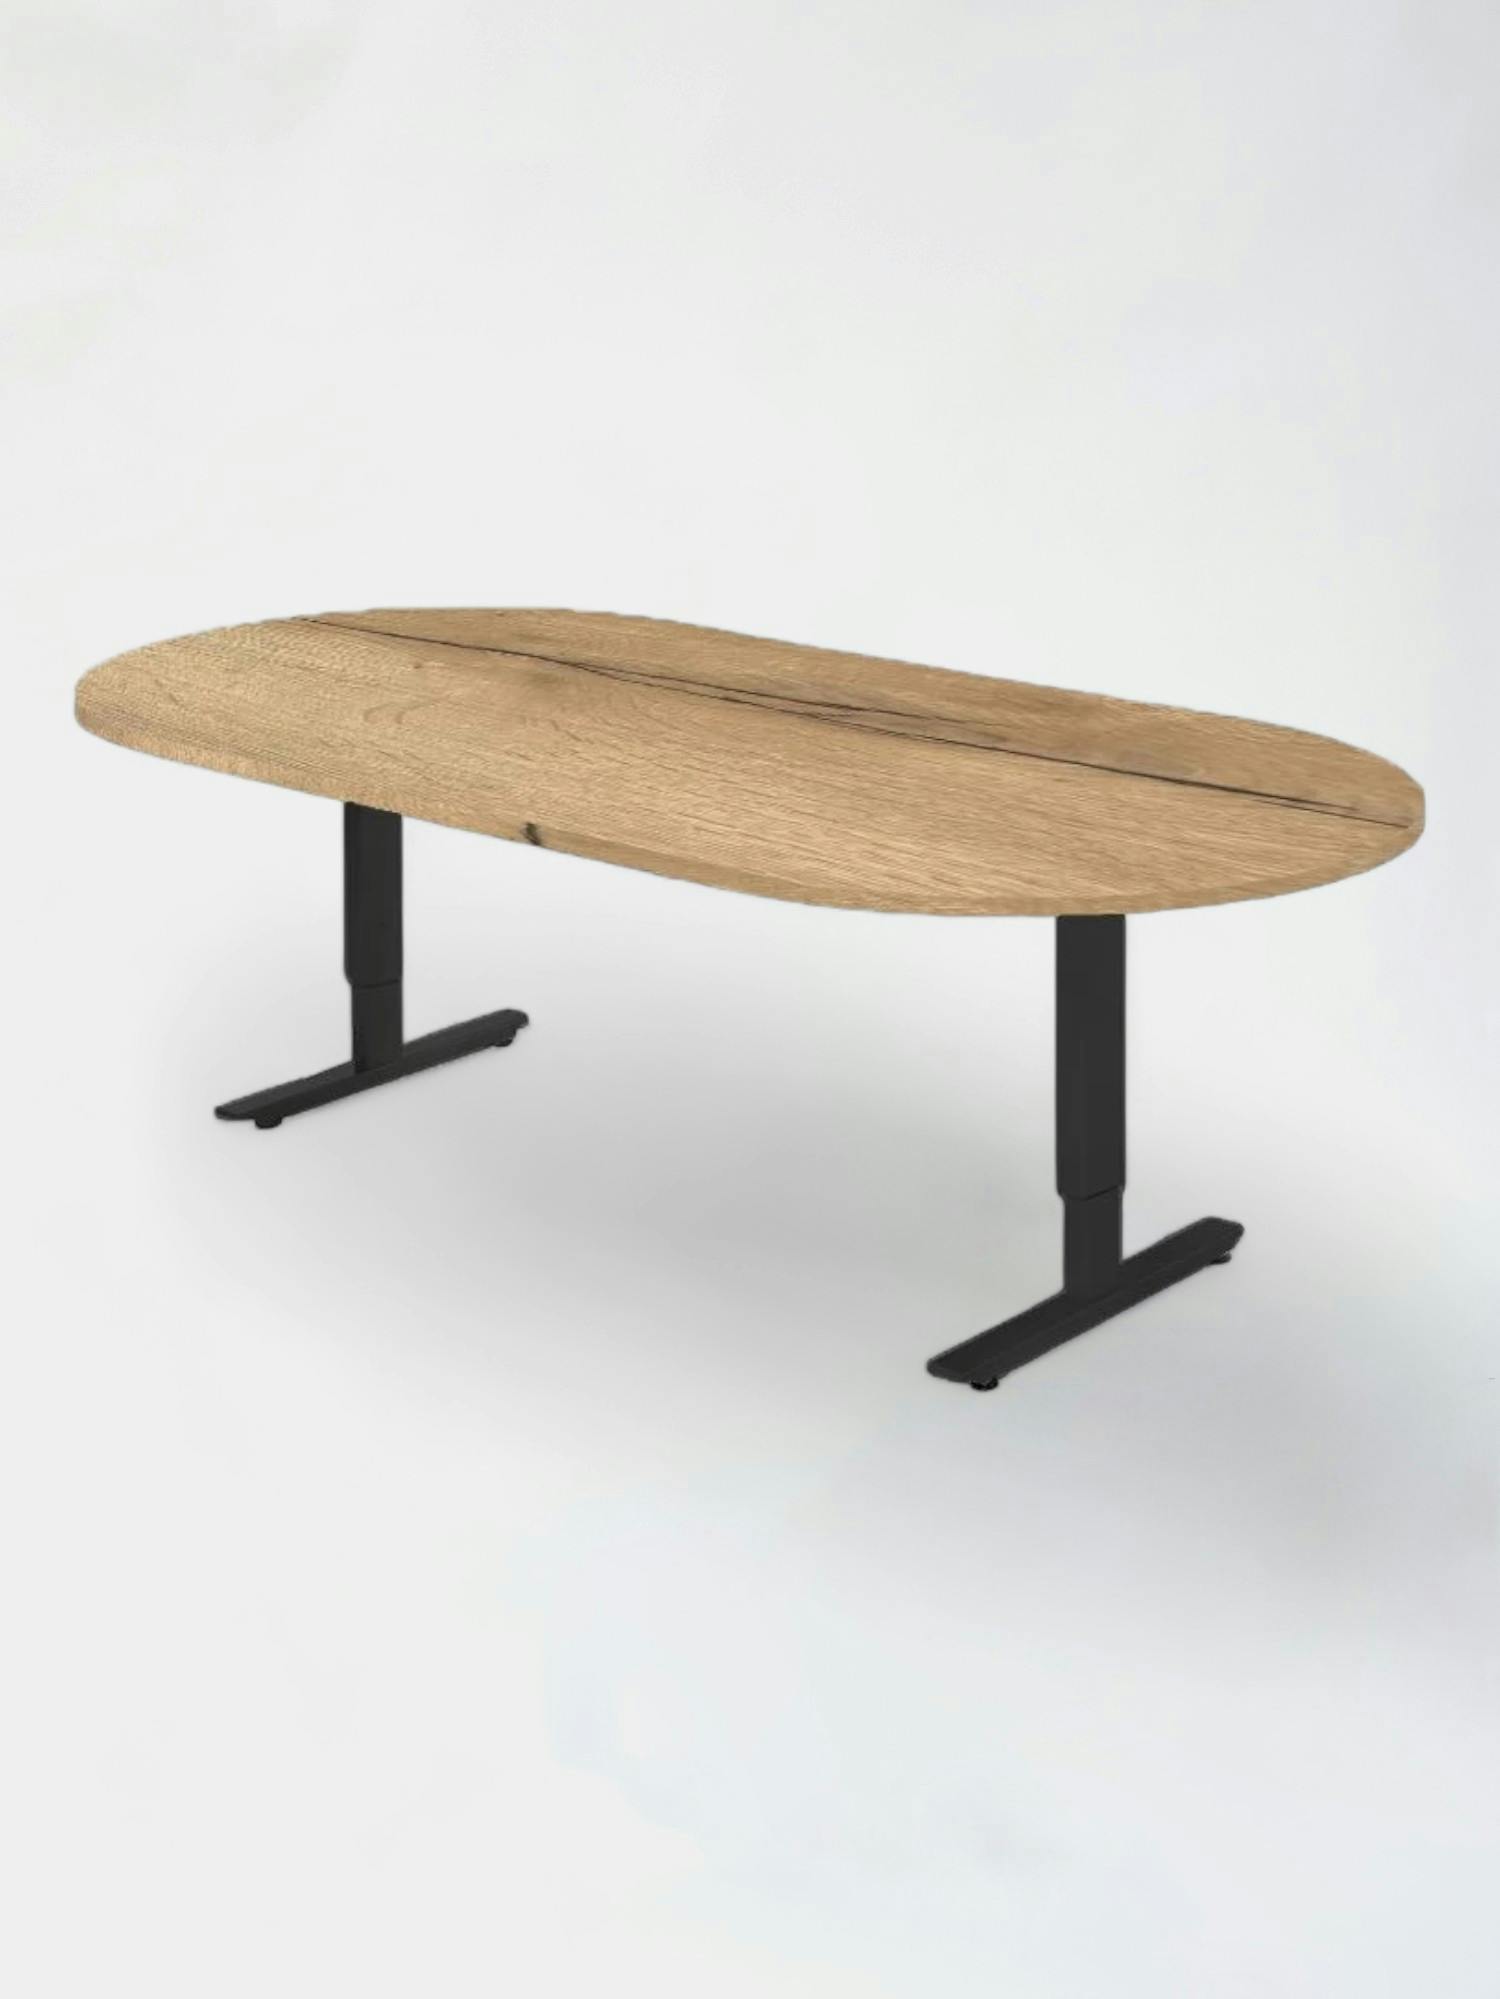 Table de réunion ovale - Relieve Furniture